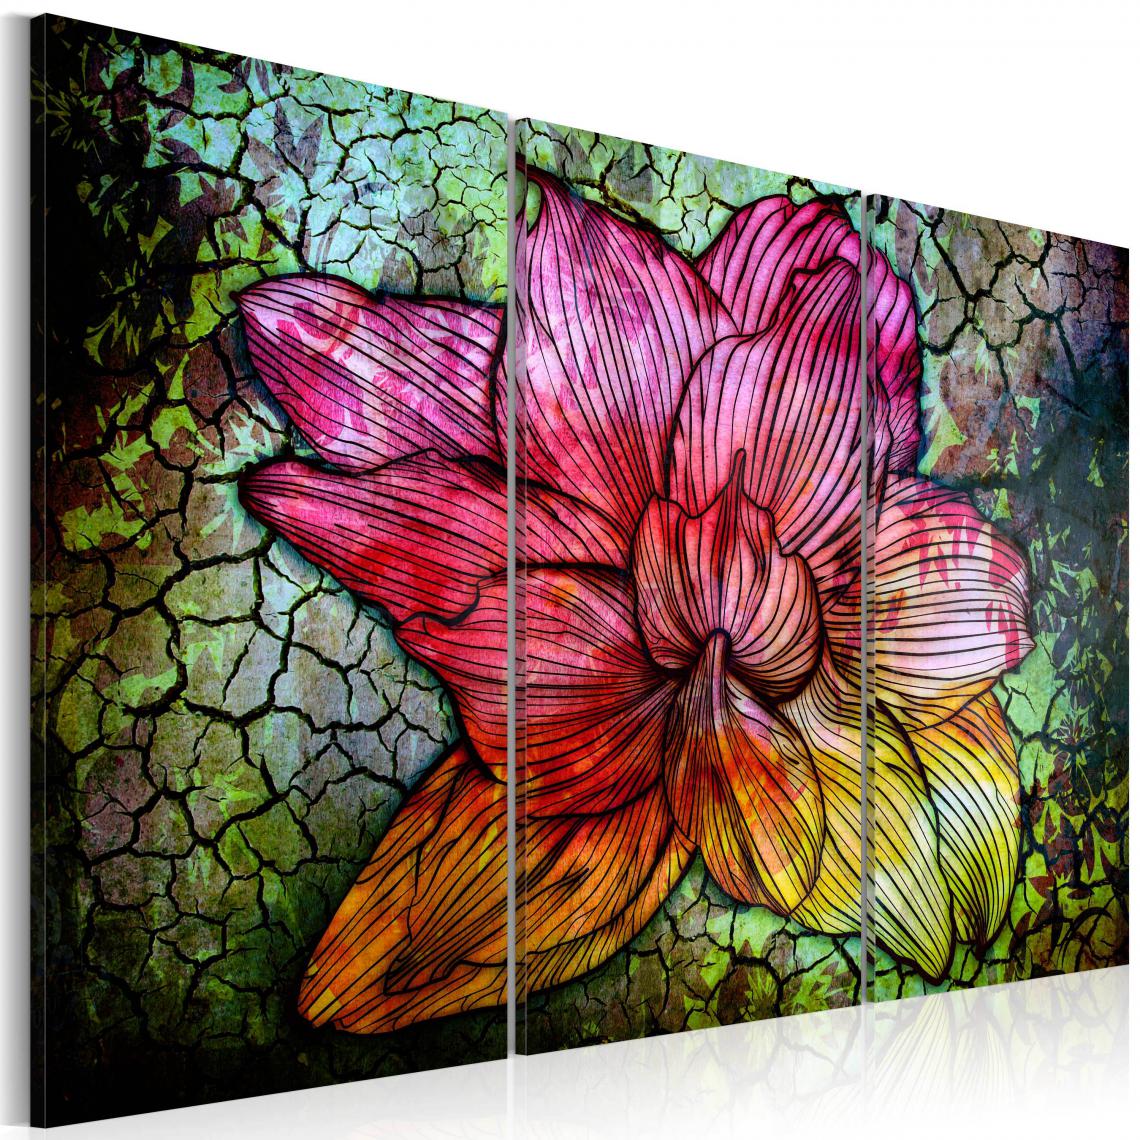 Decoshop26 - Tableau sur toile en 3 panneaux décoration murale image imprimée cadre en bois à suspendre Fleur abstraite en couleur arc- en- ciel 120x80 cm 11_0009440 - Tableaux, peintures